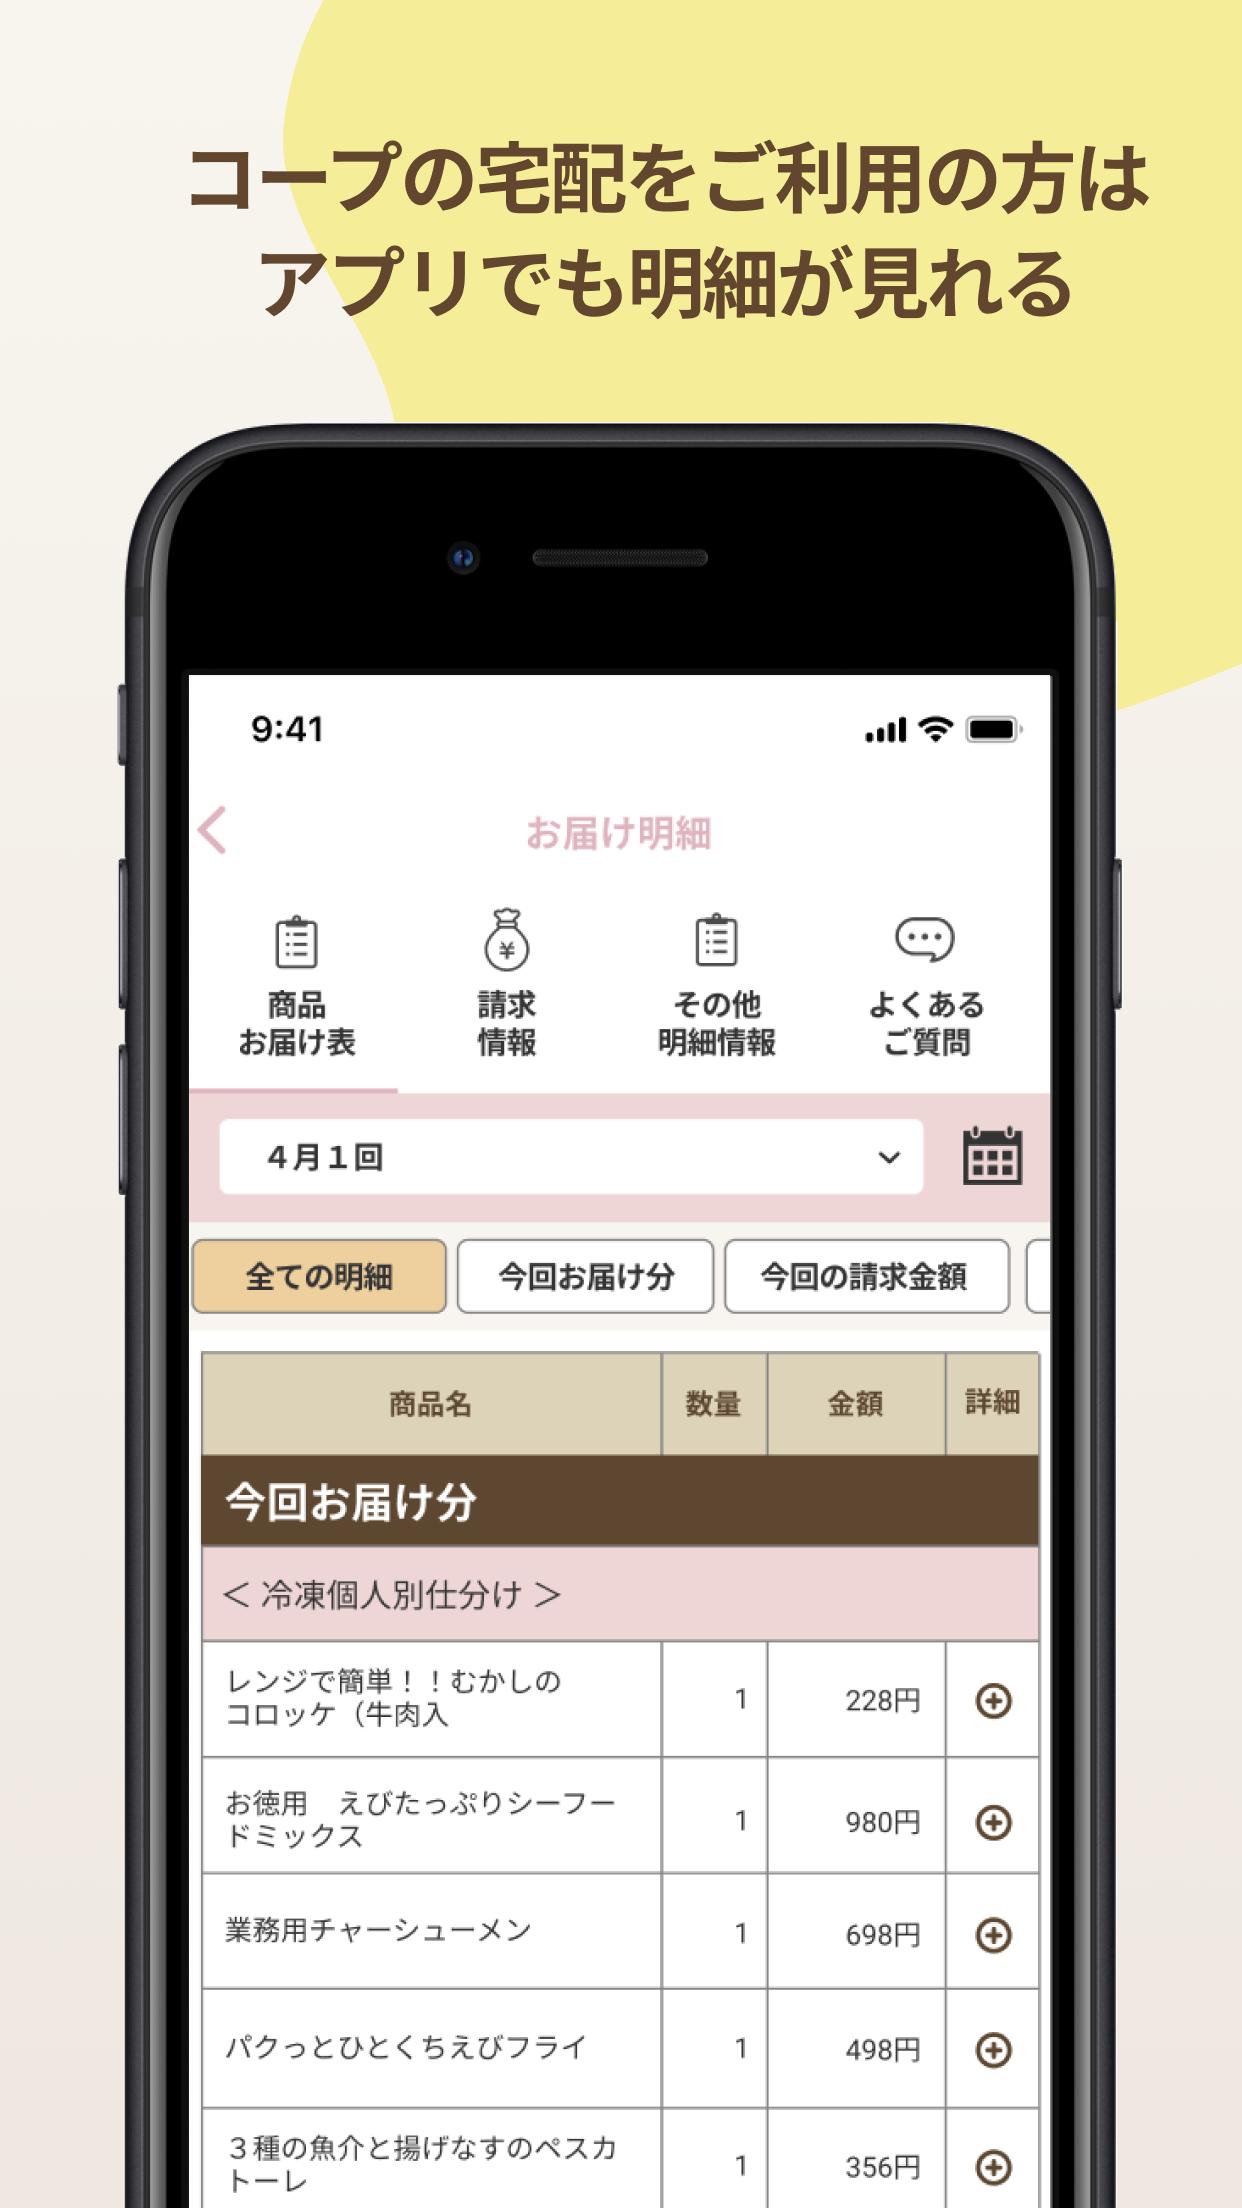 いずみ市民生協アプリ 1.0.7 Screenshot 14